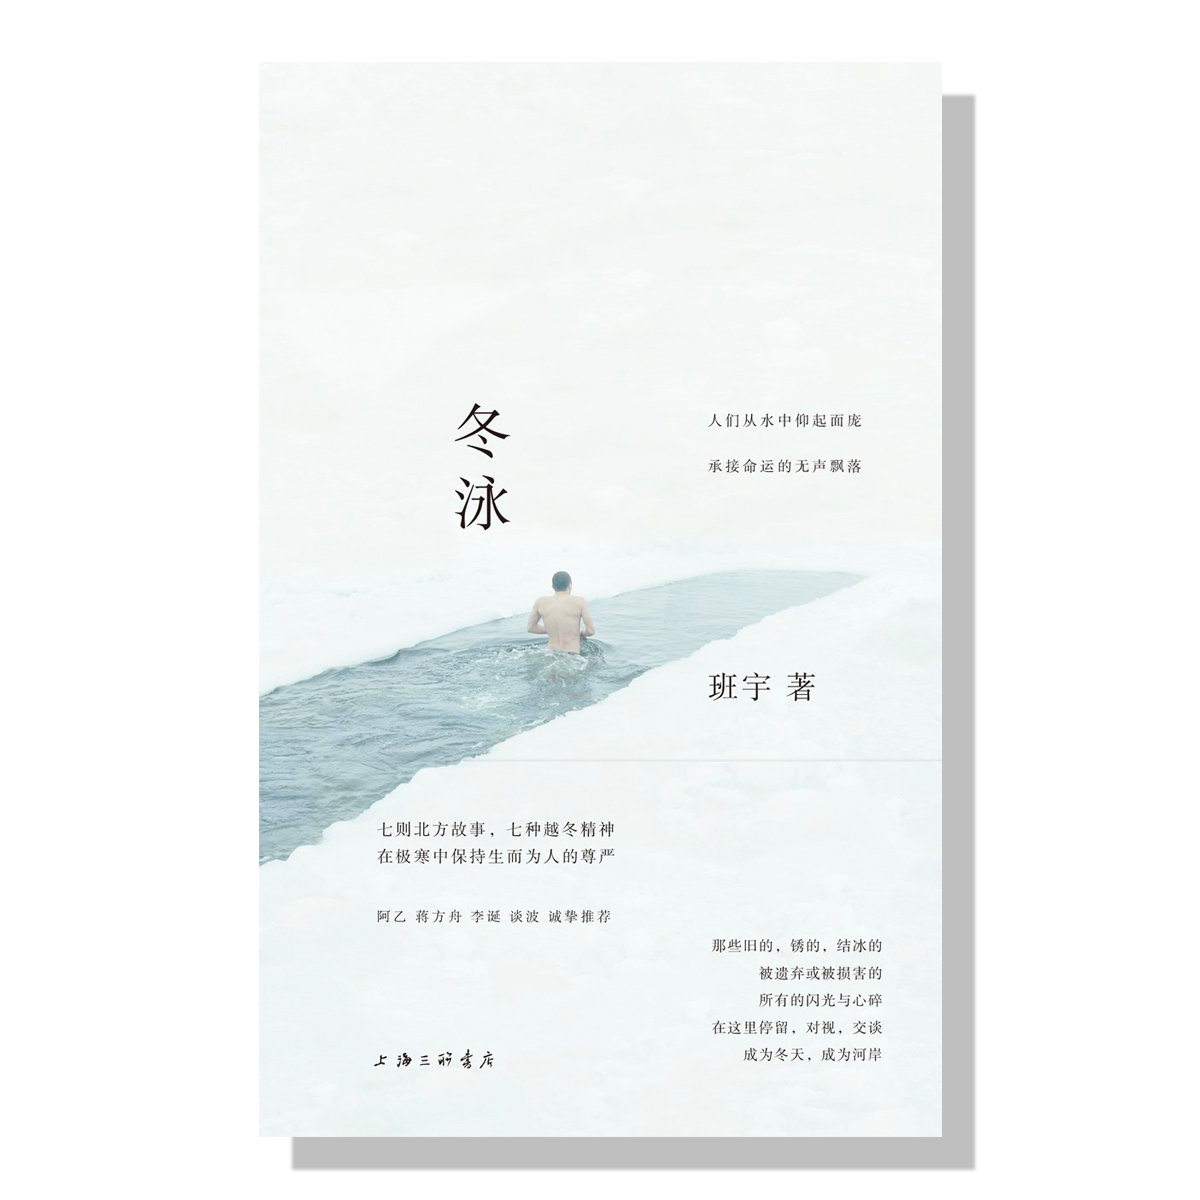 多伦多-买书-中文-冬泳